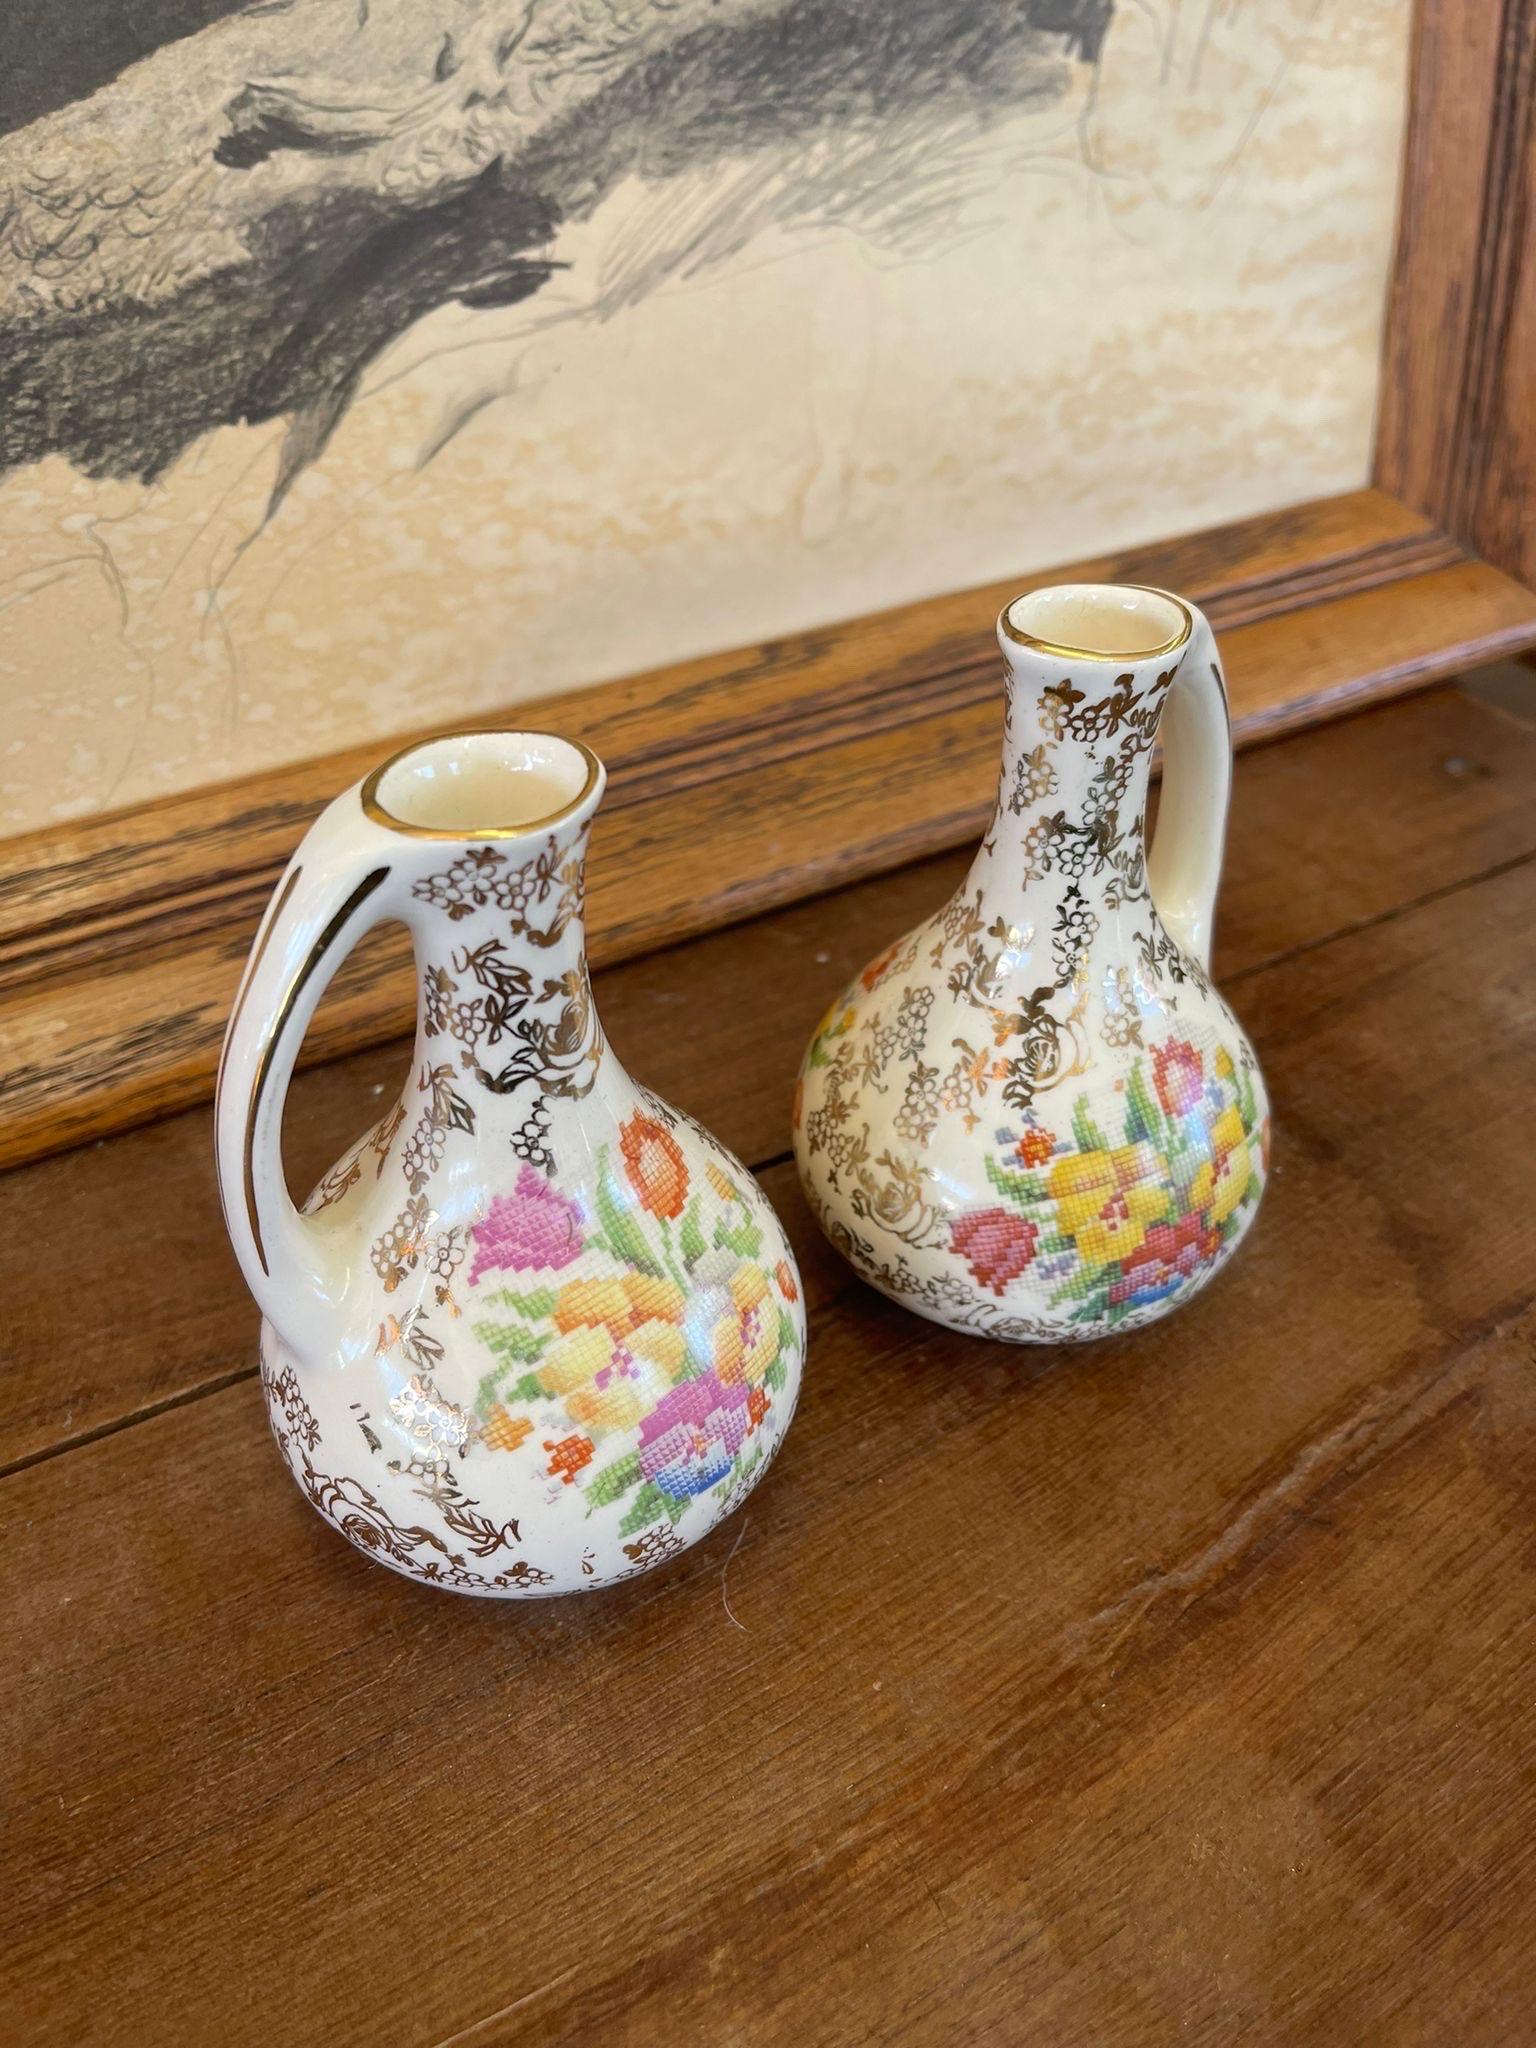 Die Vasen sind mit goldfarbenen Blumenmotiven bedeckt, die in der Mitte ein gesticktes Bouquet zeigen. Herstellerzeichen auf der Unterseite mit der Angabe Made in England wie abgebildet.

Abmessungen. 3 B ; 3 T ; 5 H